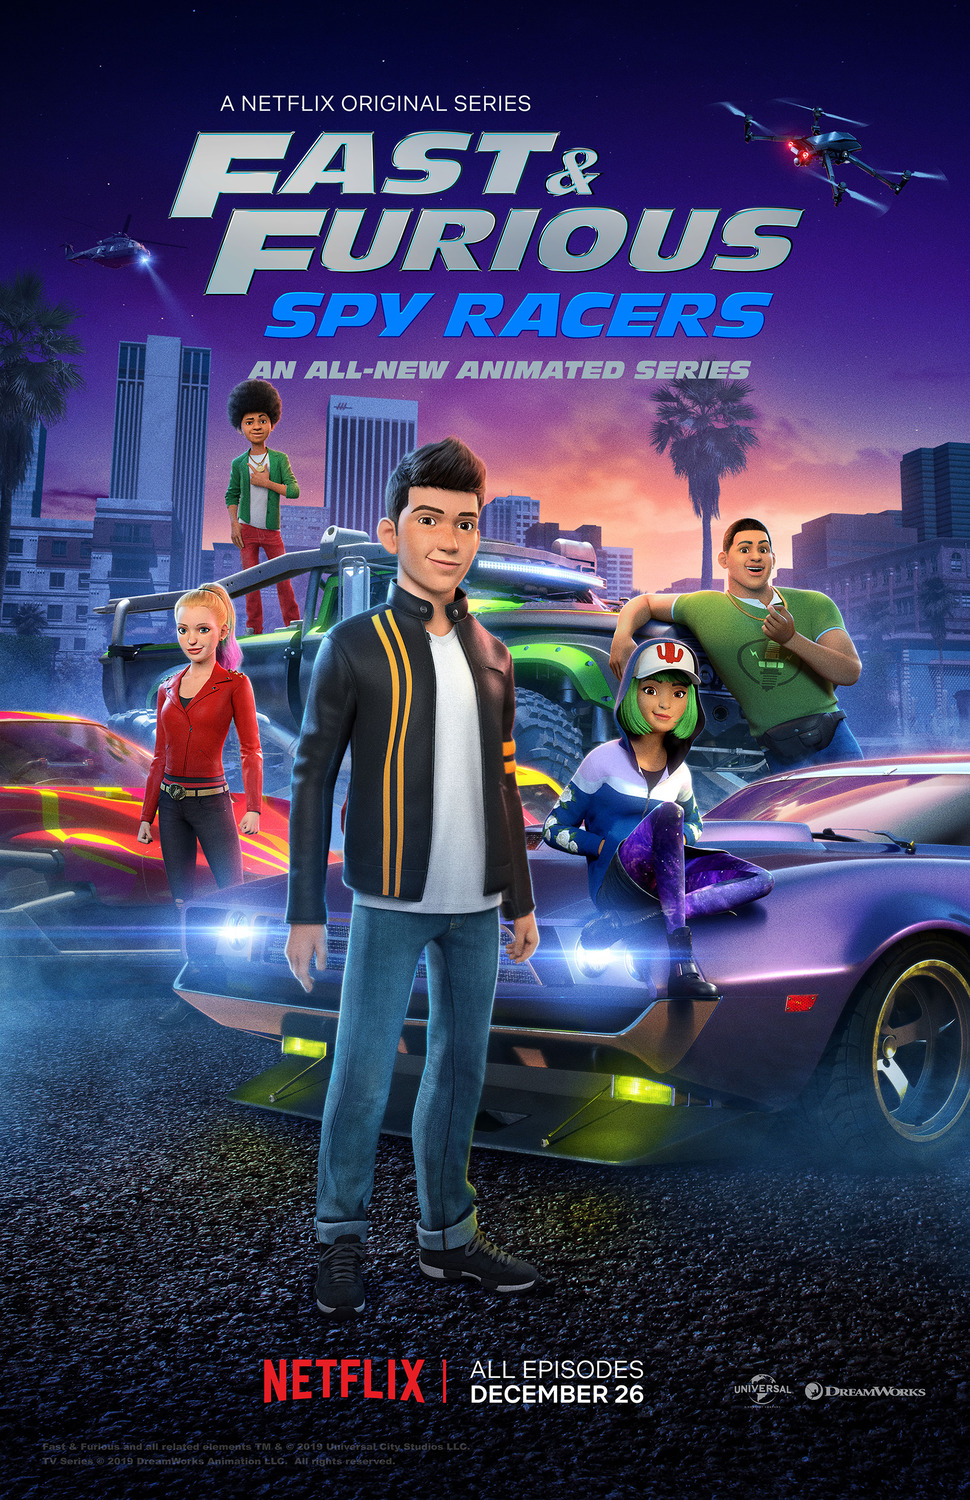 ดูหนังออนไลน์ฟรี Fast & Furious Spy Racers (2019) Season1 EP4 เร็ว…แรง ทะลุนรก ซิ่งสยบโลก ตอนที่ 4 (พากย์ไทย)